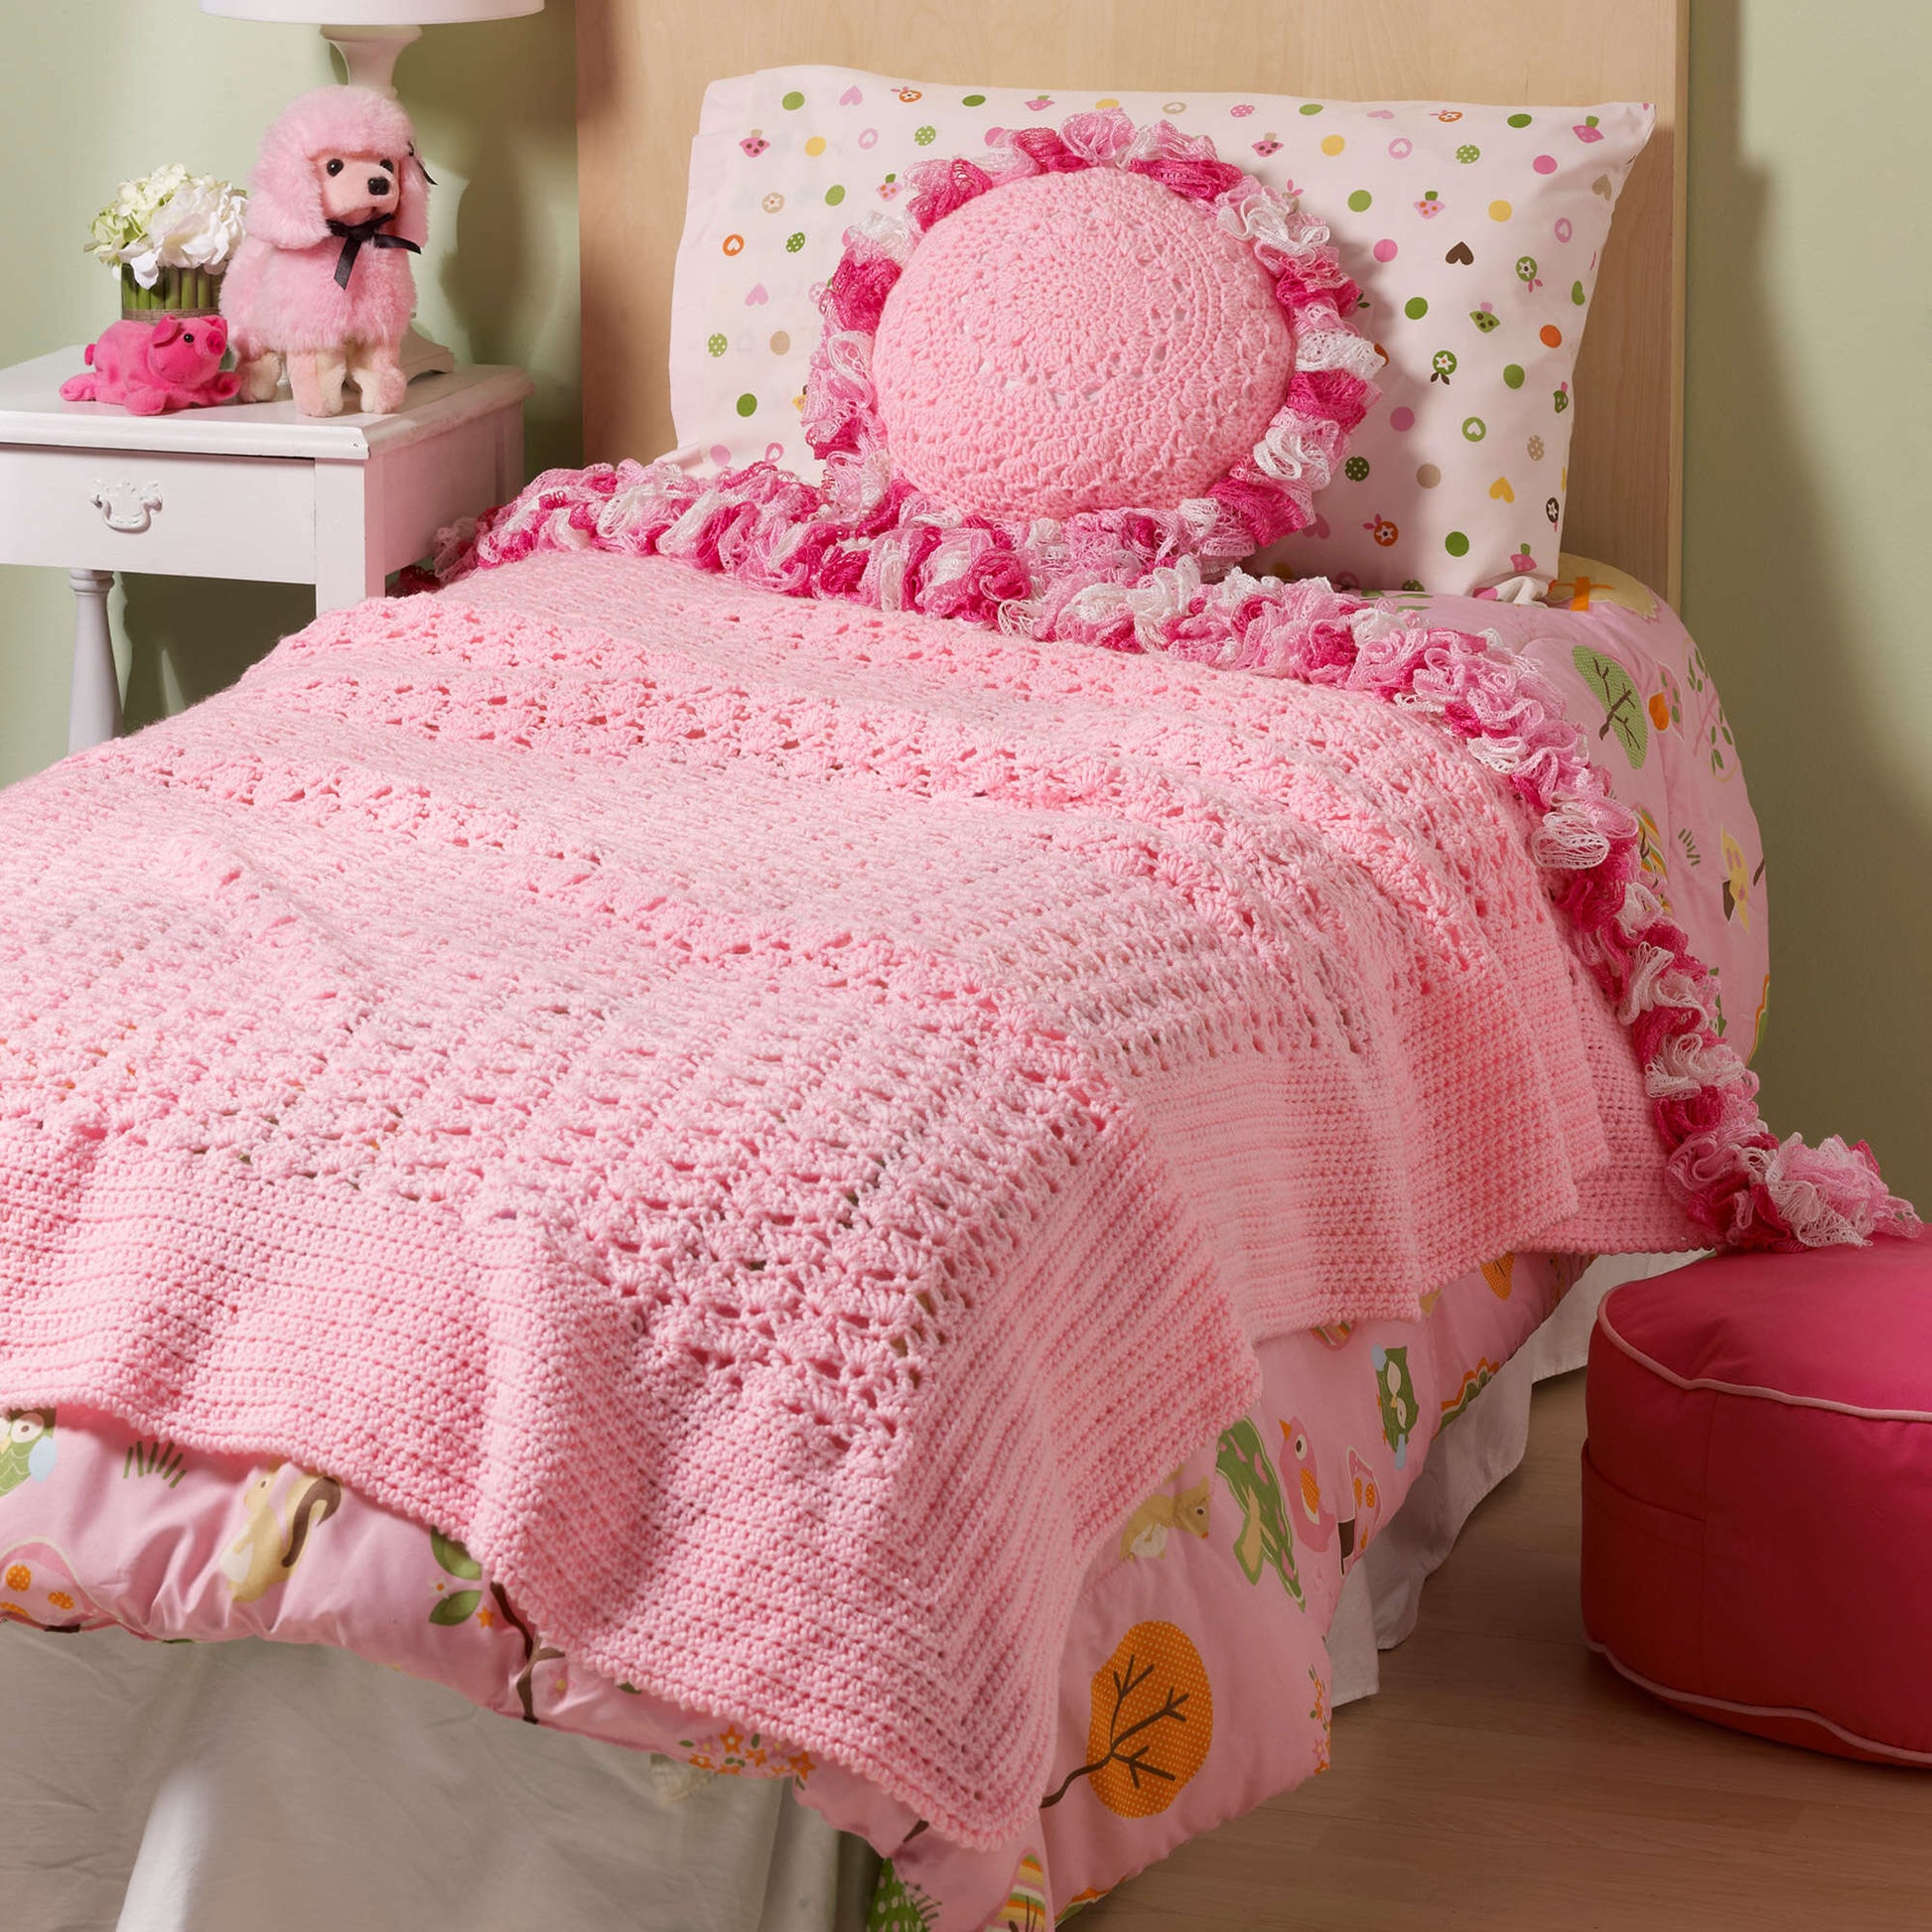 Free Red Heart Sweet Ruffles Crochet Blanket & Pillow Pattern